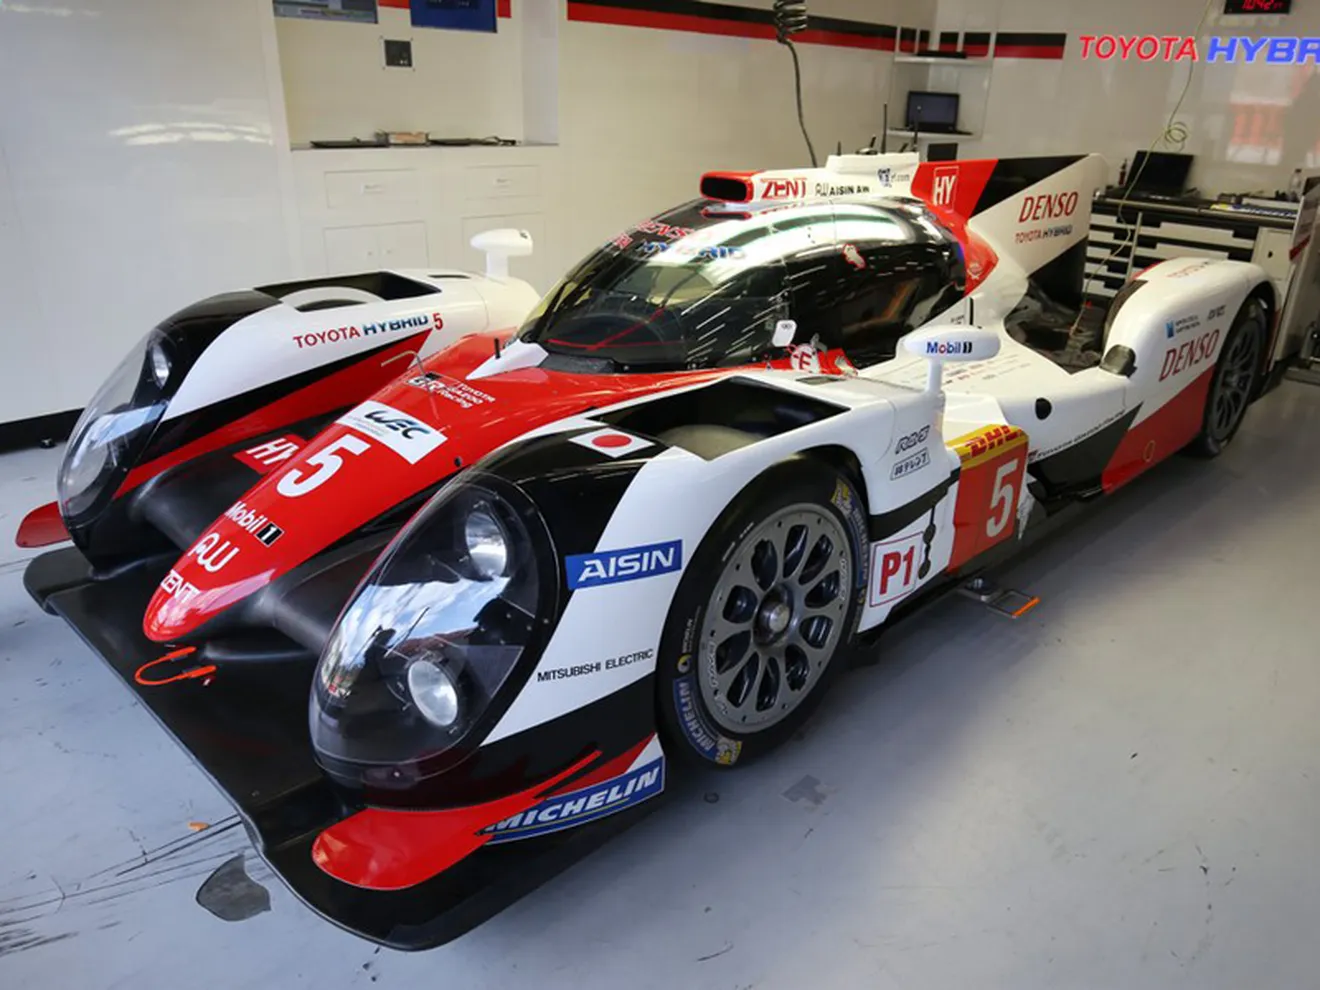 Toyota estrena en Spa el kit aerodinámico de Le Mans